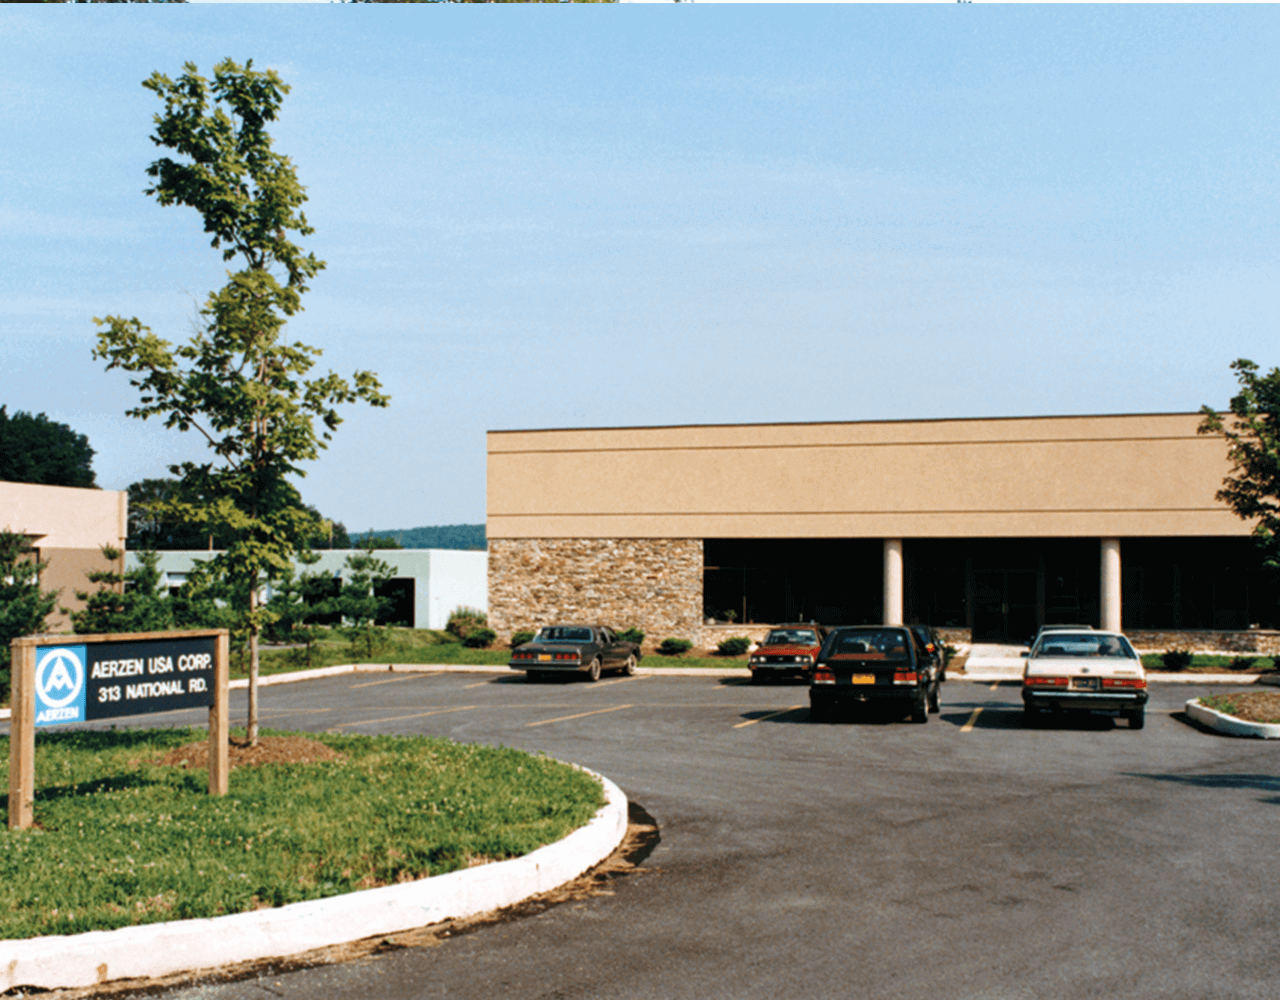 Bilde bygningen til datterselskapet Aerzen USA Corporation